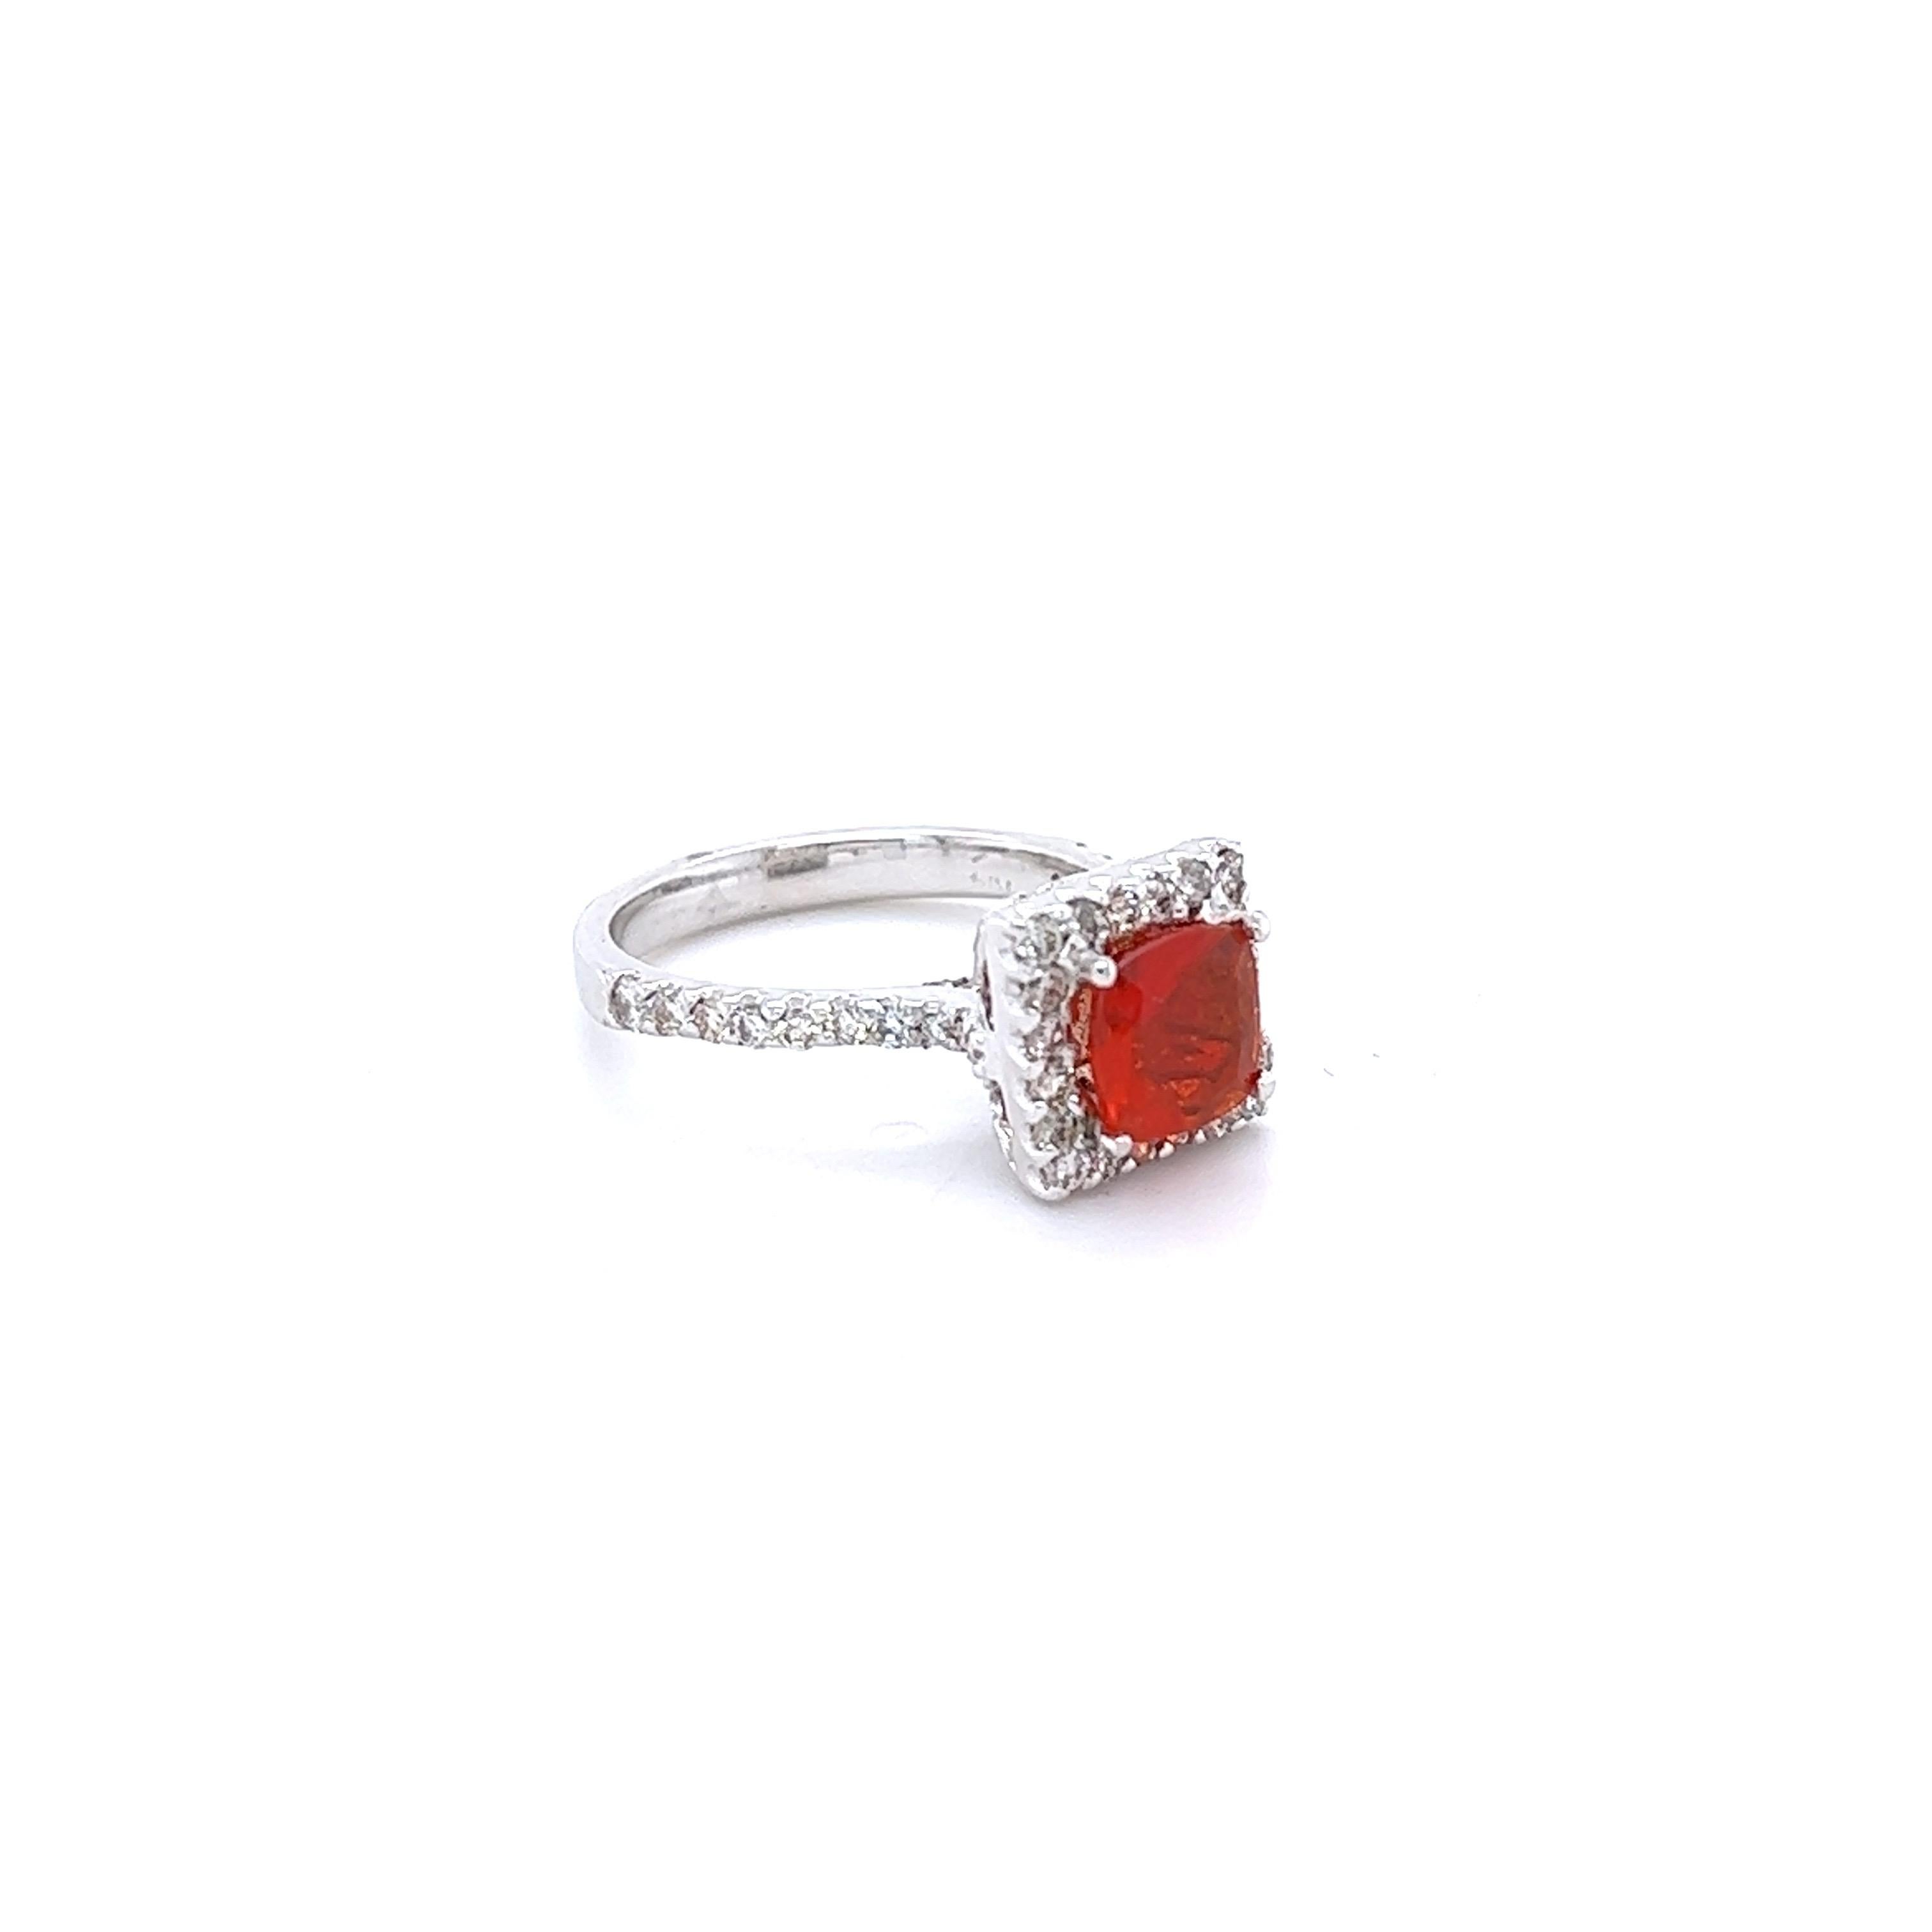 Dieser Ring hat einen Cushion Cut 0,85 Karat Feuer Opal in der Mitte des Rings und ist umgeben von 73 Round Cut Diamanten, die insgesamt 0,93 Karat wiegen (Clarity:  VS2, Farbe: H).  Das Gesamtkaratgewicht des Rings beträgt 1,78 Karat.  
Der Ring